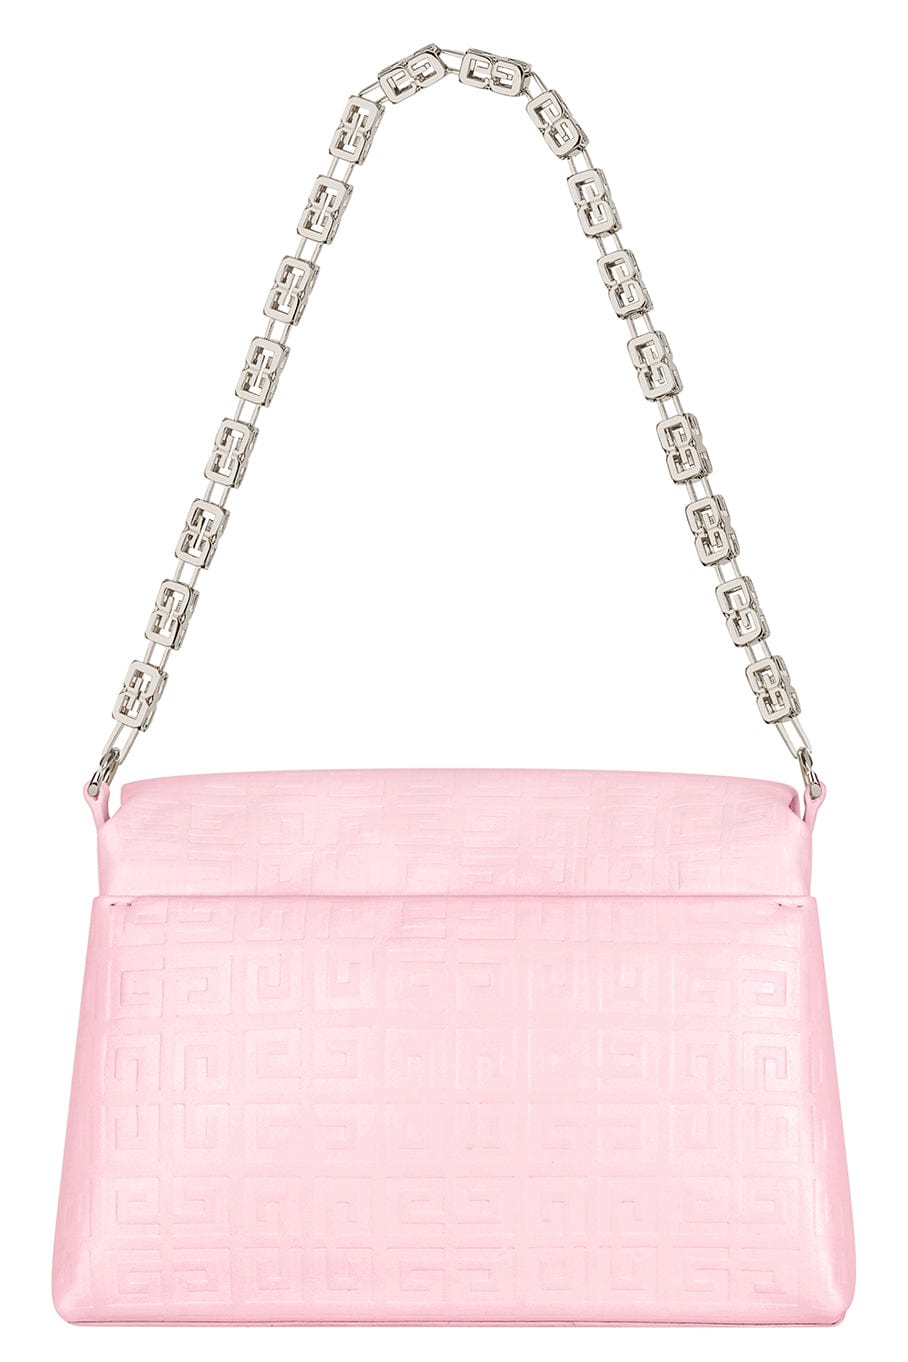 GIVENCHY-Medium 4g Soft Shoulder Bag - Pink-BLOSSOM PINK